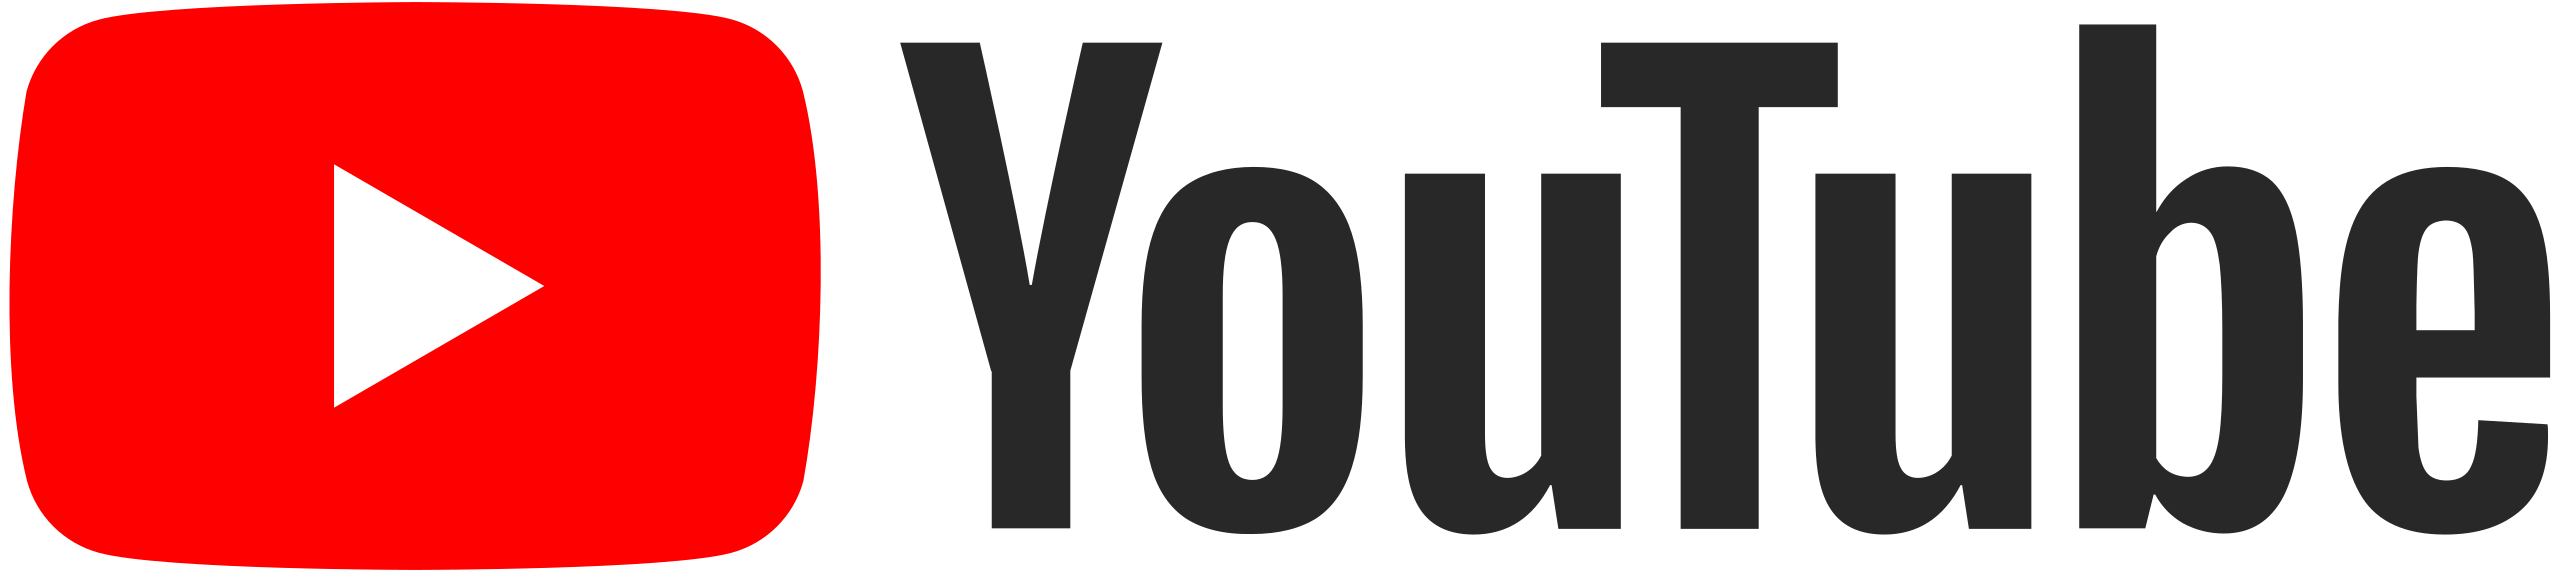 Comment créer un logo YouTube Fortnite ?